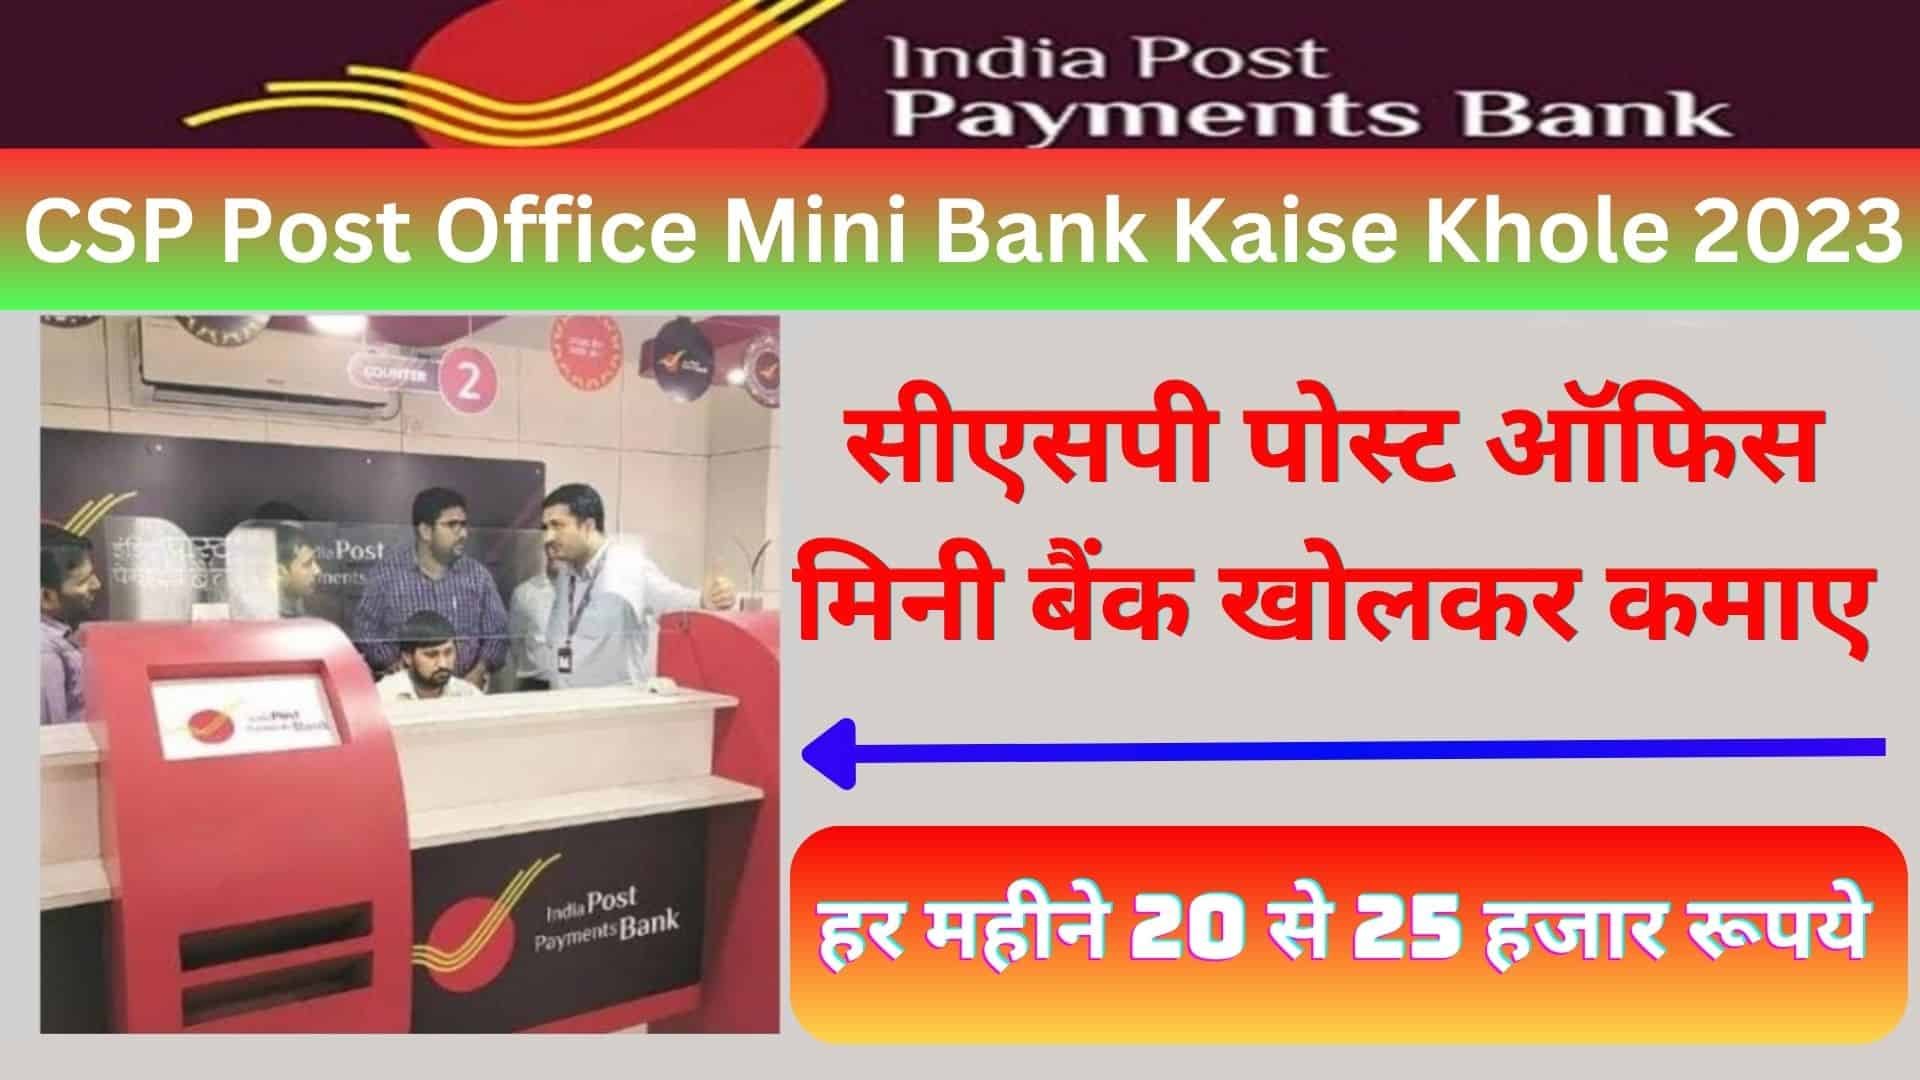 CSP Post Office Mini Bank Kaise Khole 2023 : सीएसपी पोस्ट ऑफिस मिनी बैंक खोलकर कमाए हर महीने 20 से 25 हजार रूपये